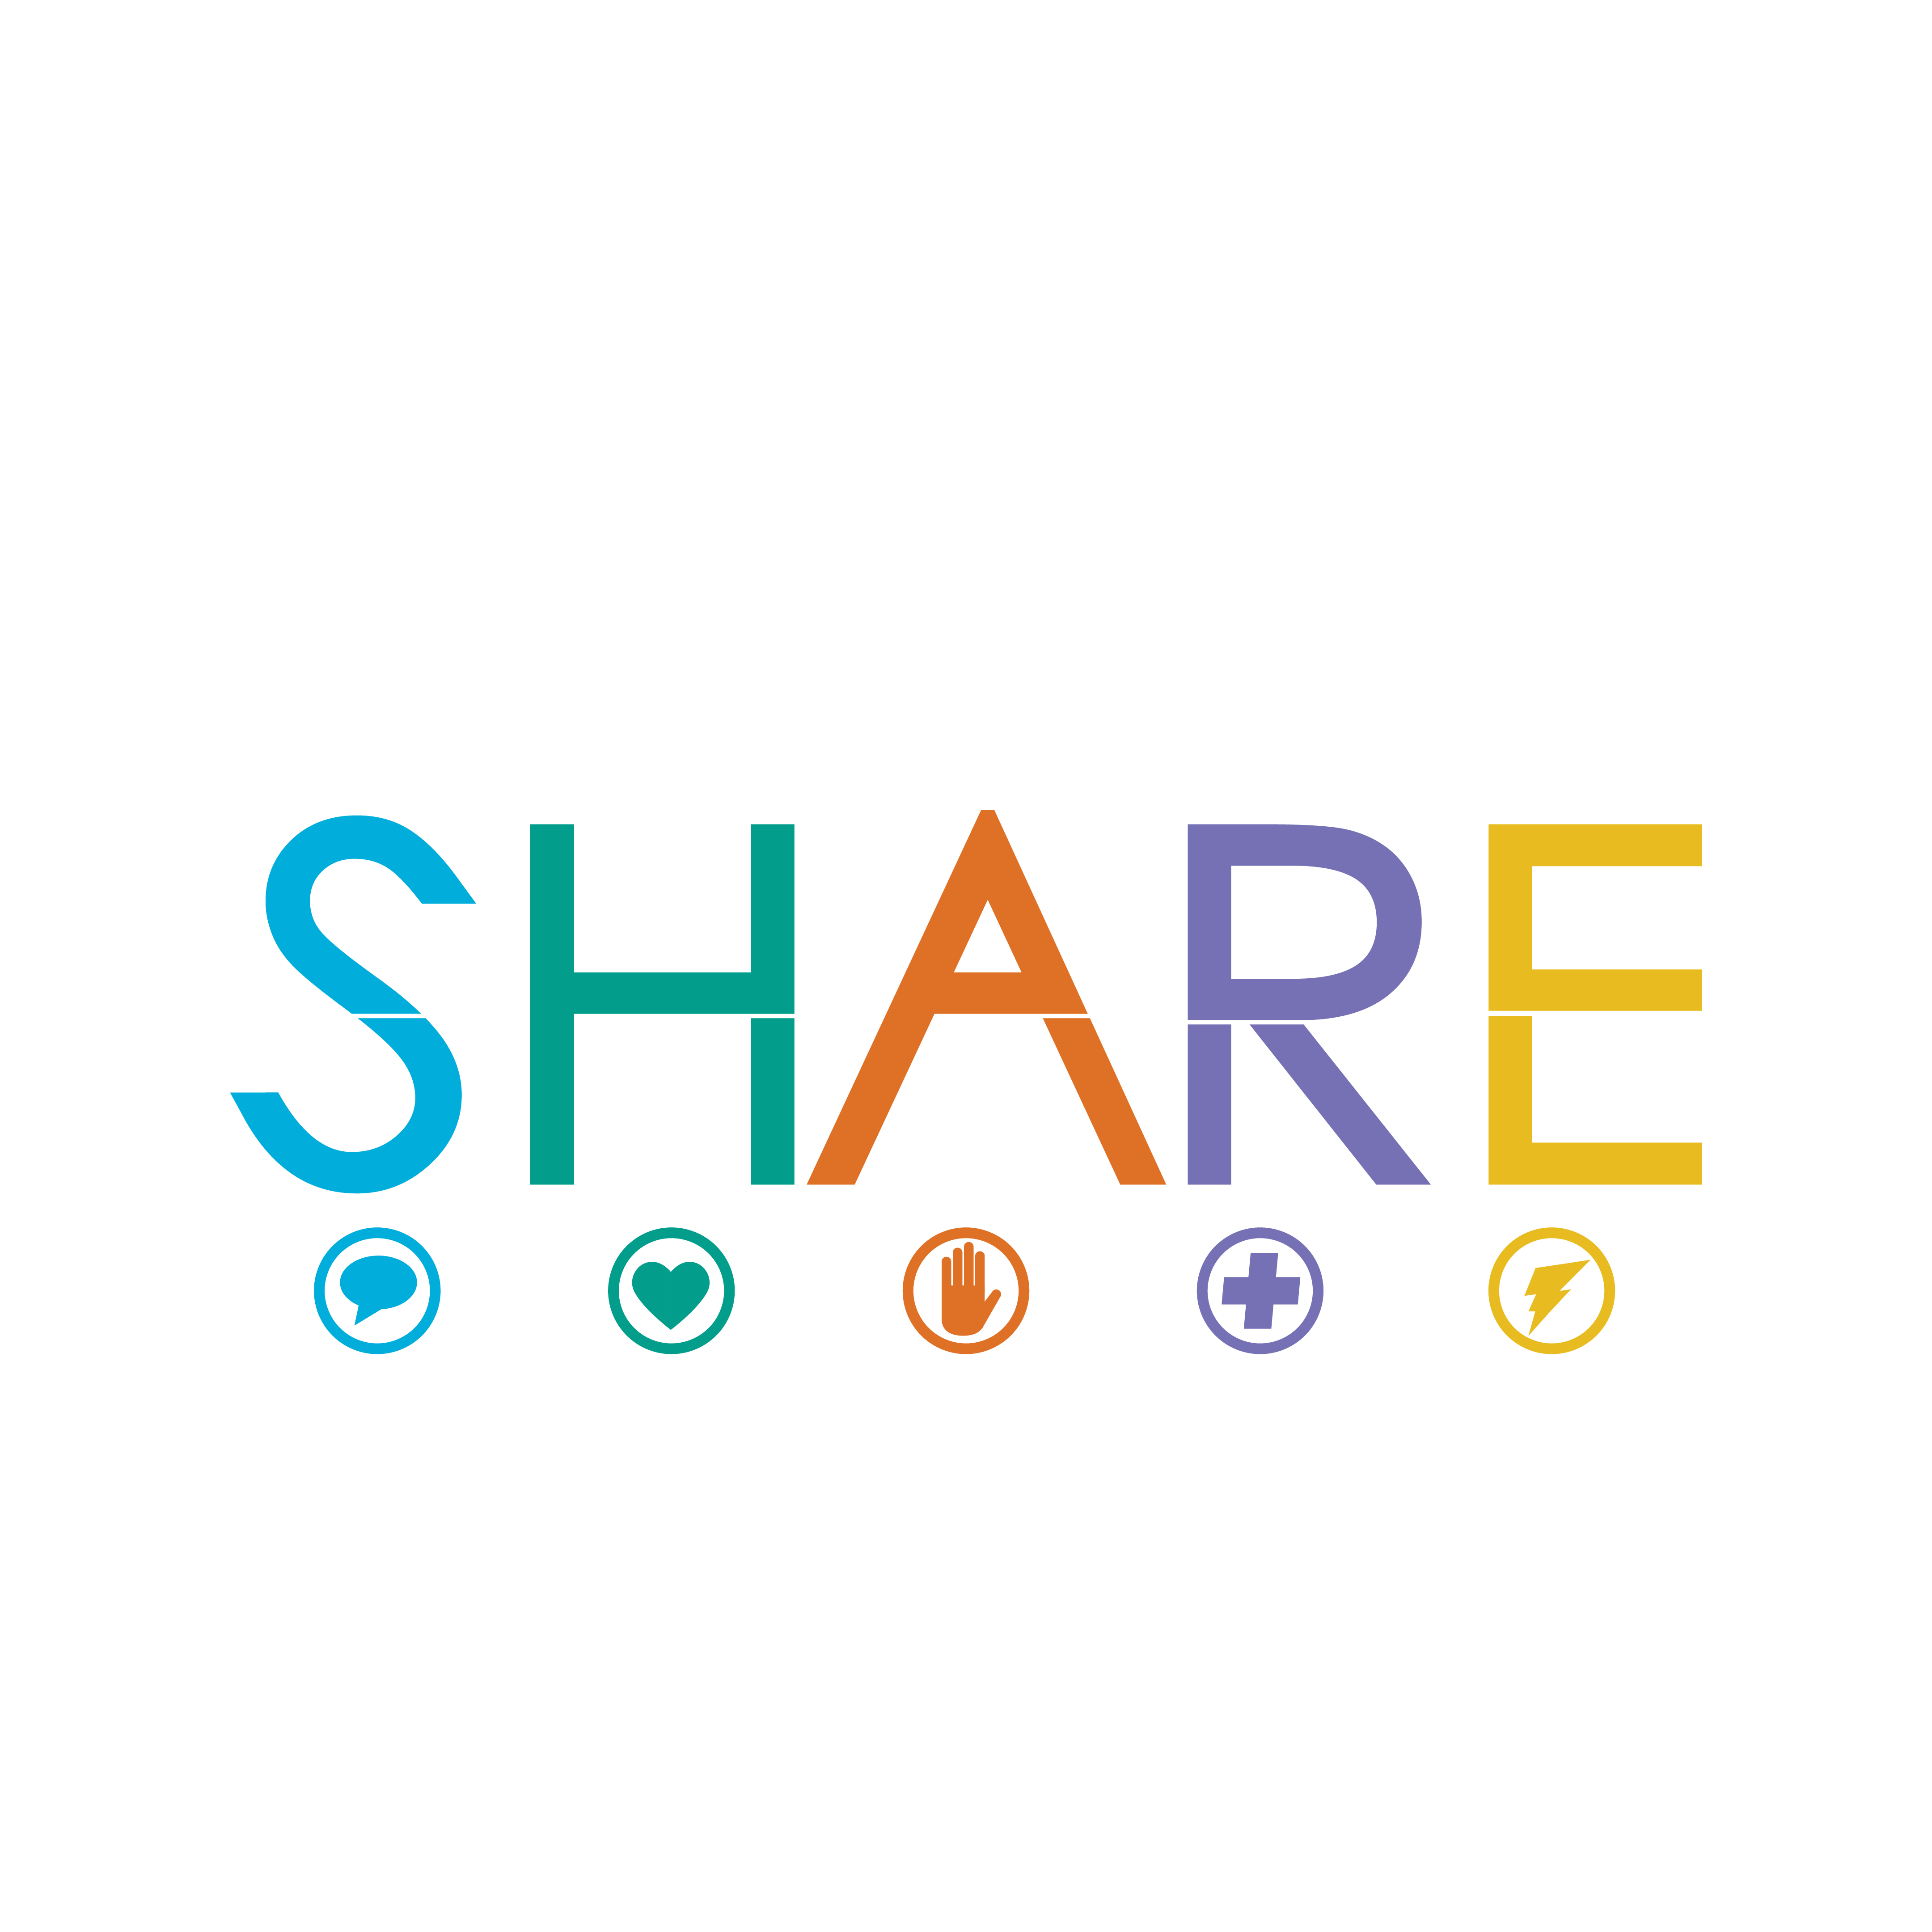 SHARE_Chicago_logo